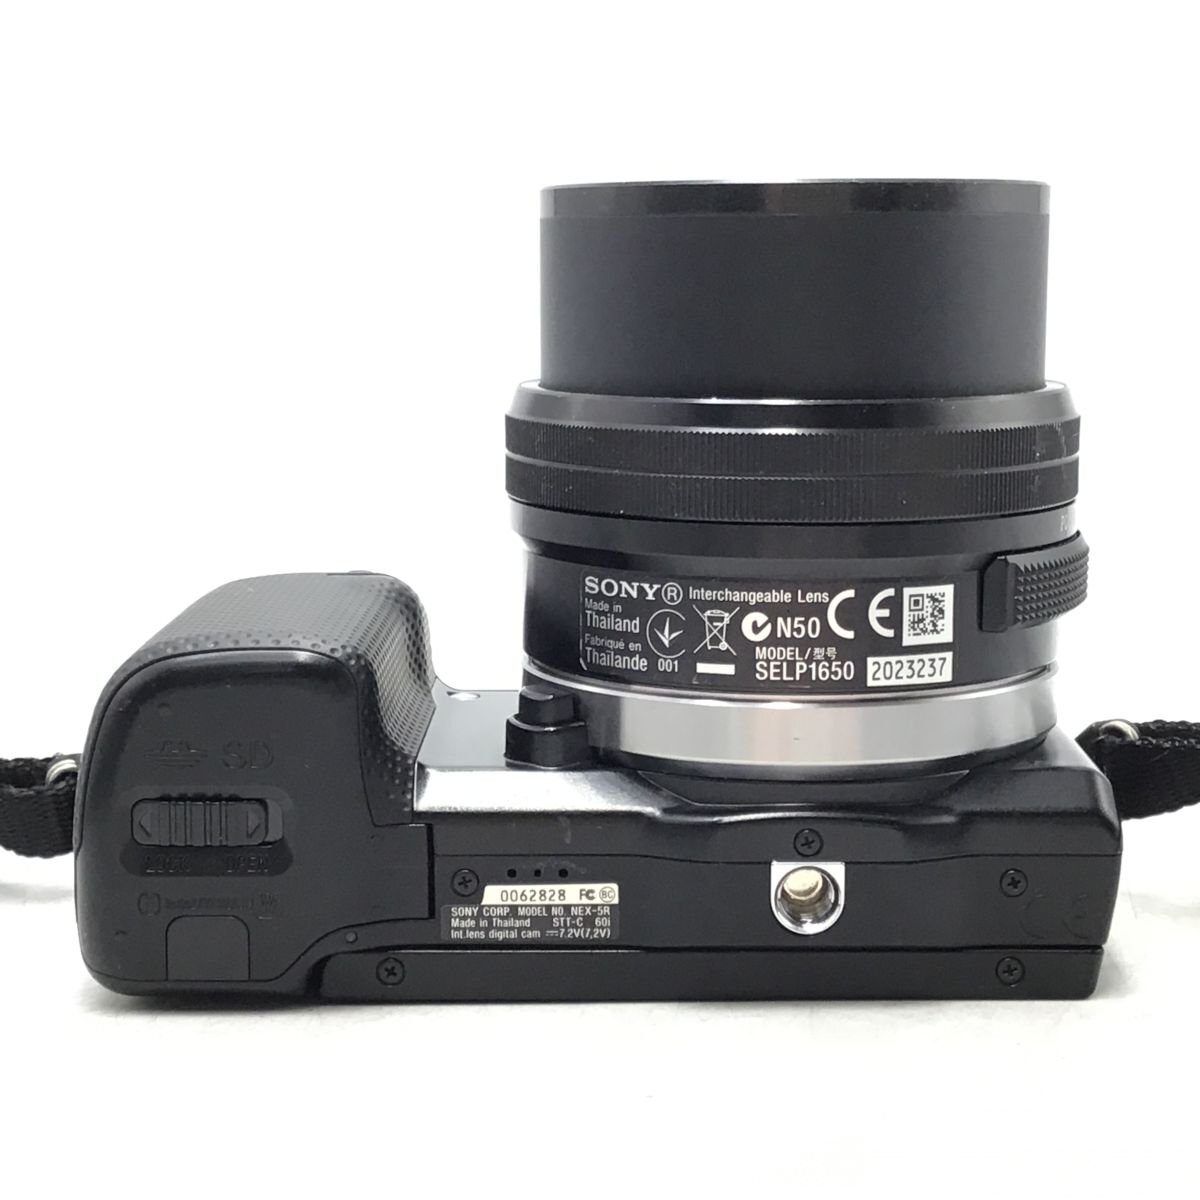  камера Sony NEX-5R / E 3.5-5.6 / PZ 16-50mm OSS беззеркальный однообъективный зеркальный комплект товар текущее состояние товар [1692HJ]